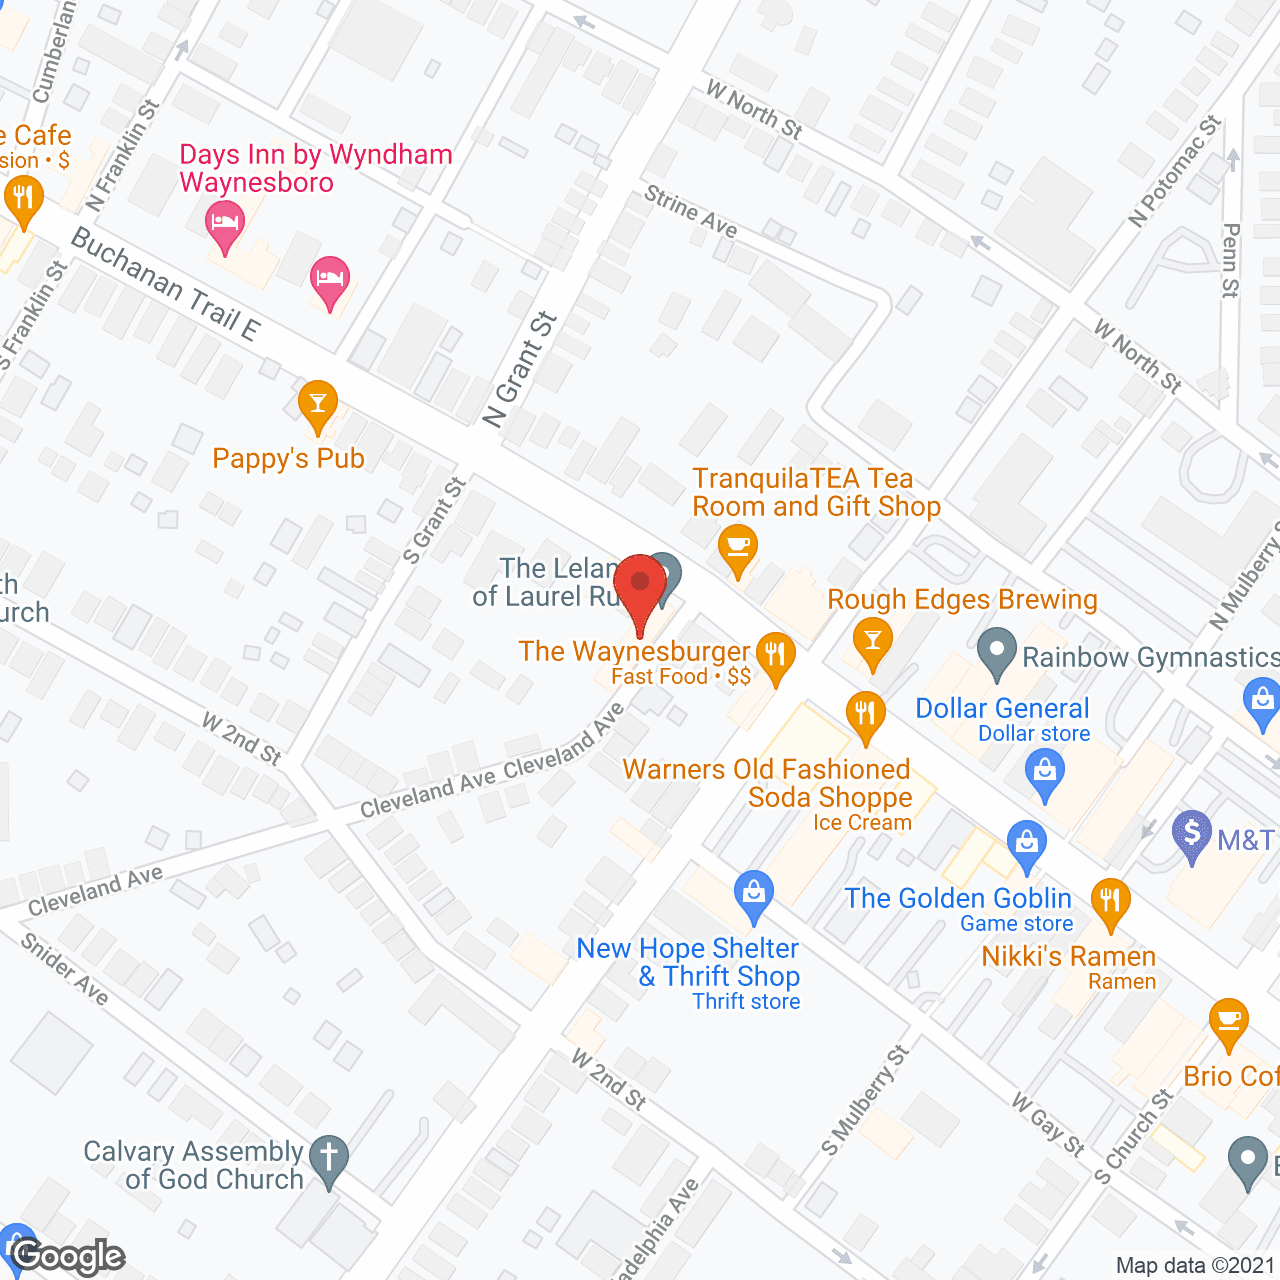 The Leland of Laurel Run in google map